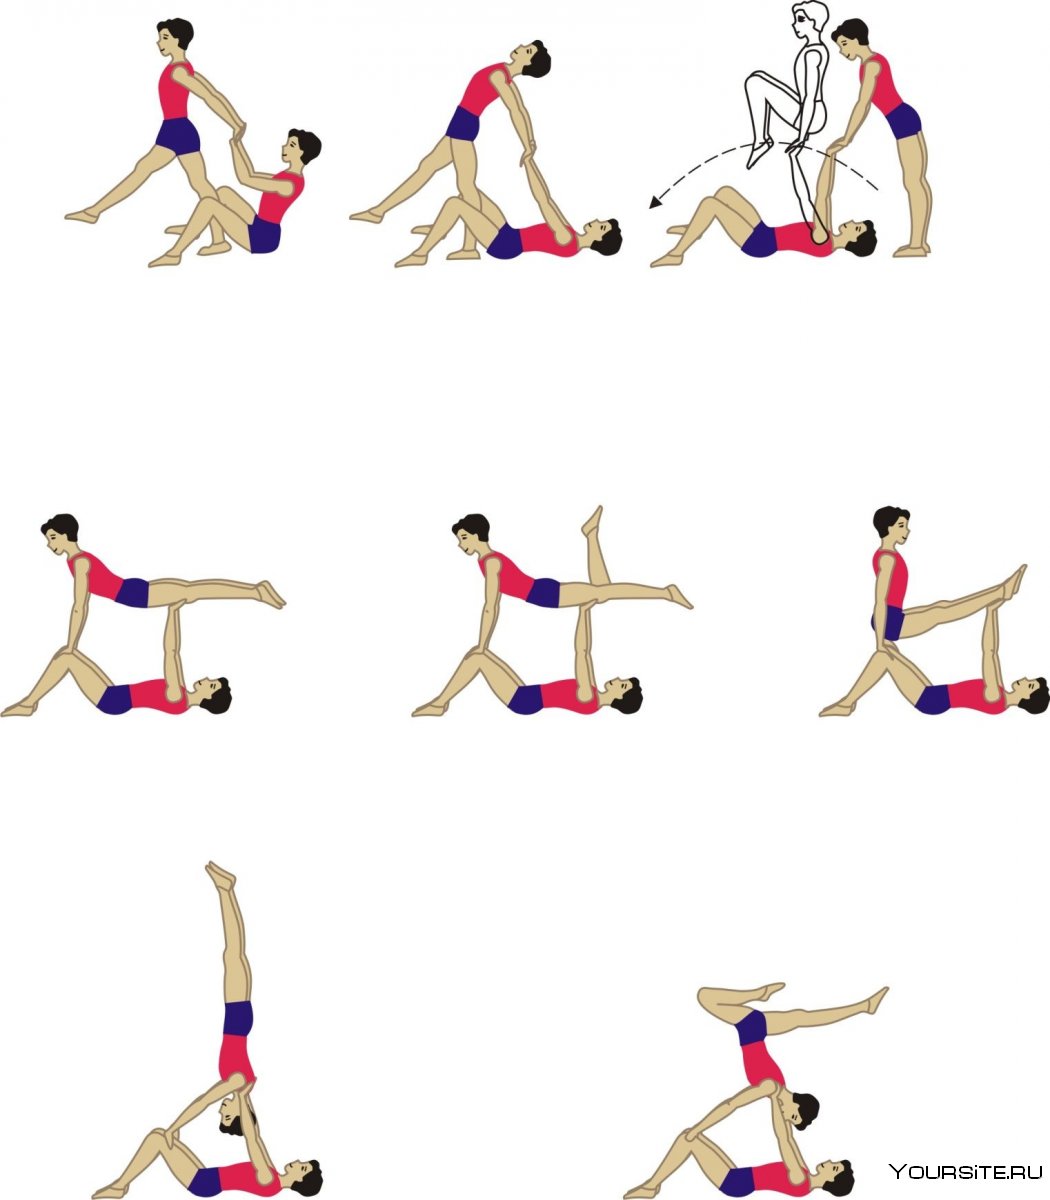 Акробатические упражнения